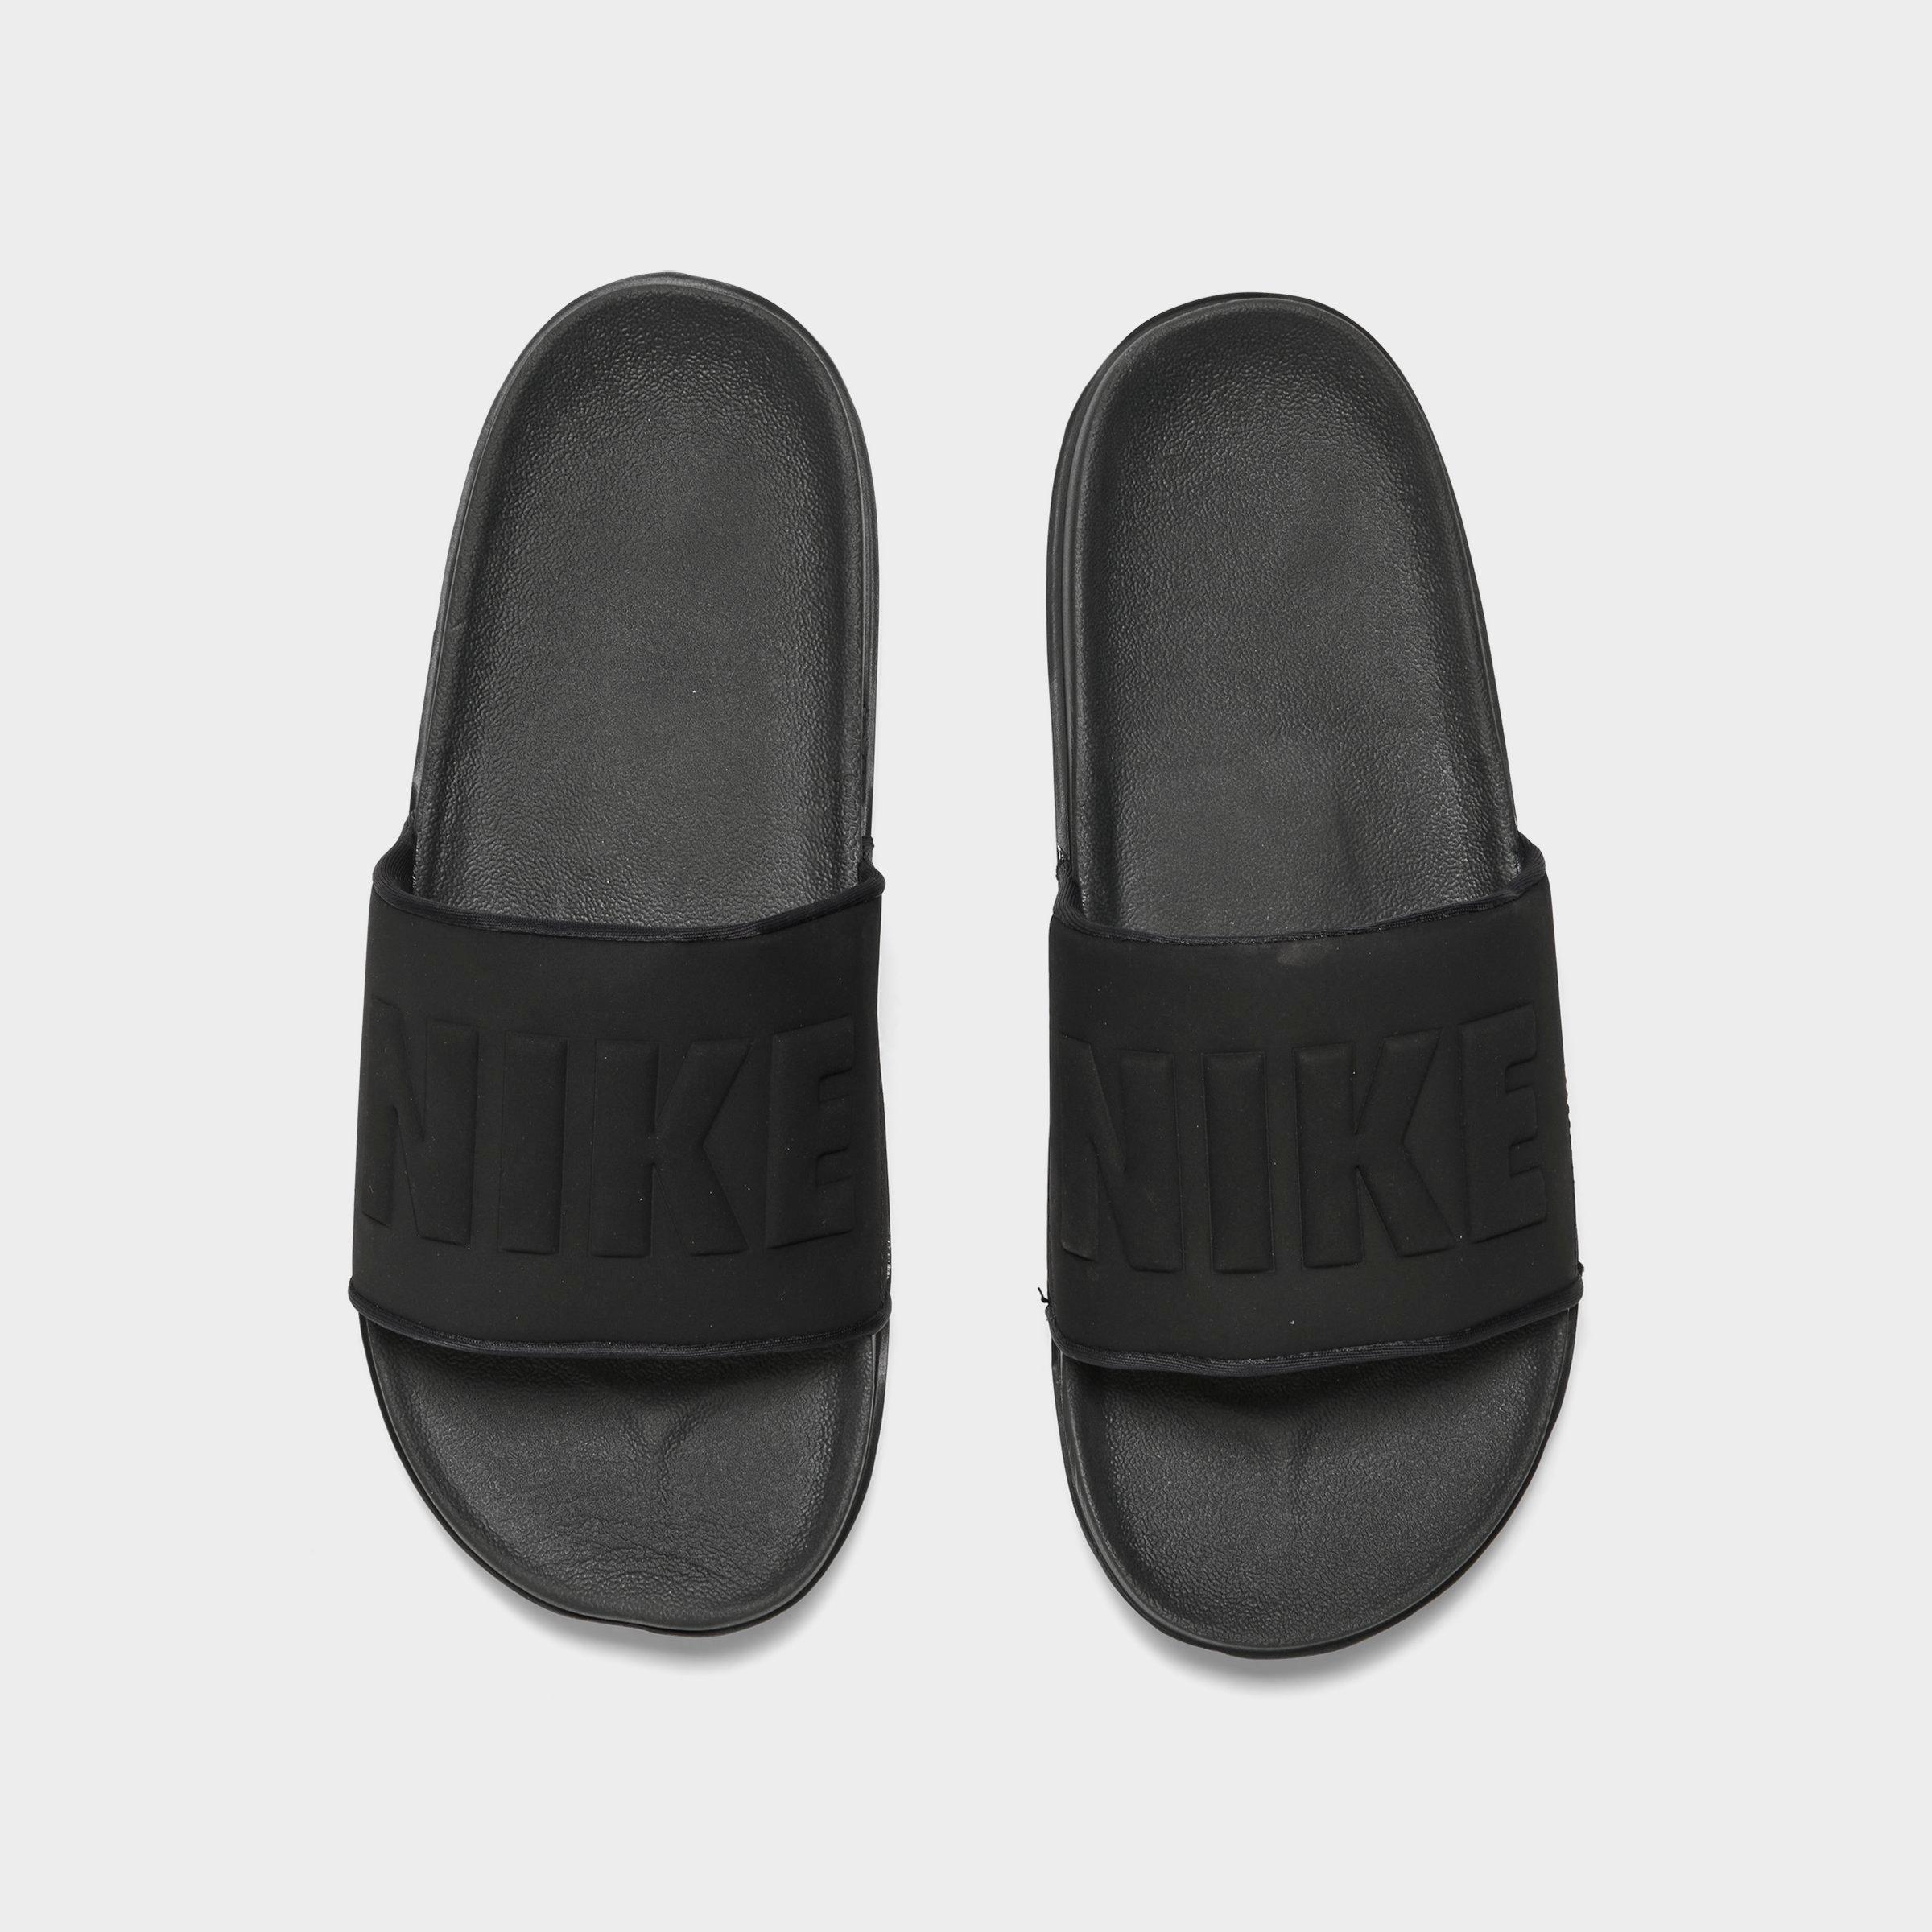 nike men's offcourt slide sandals